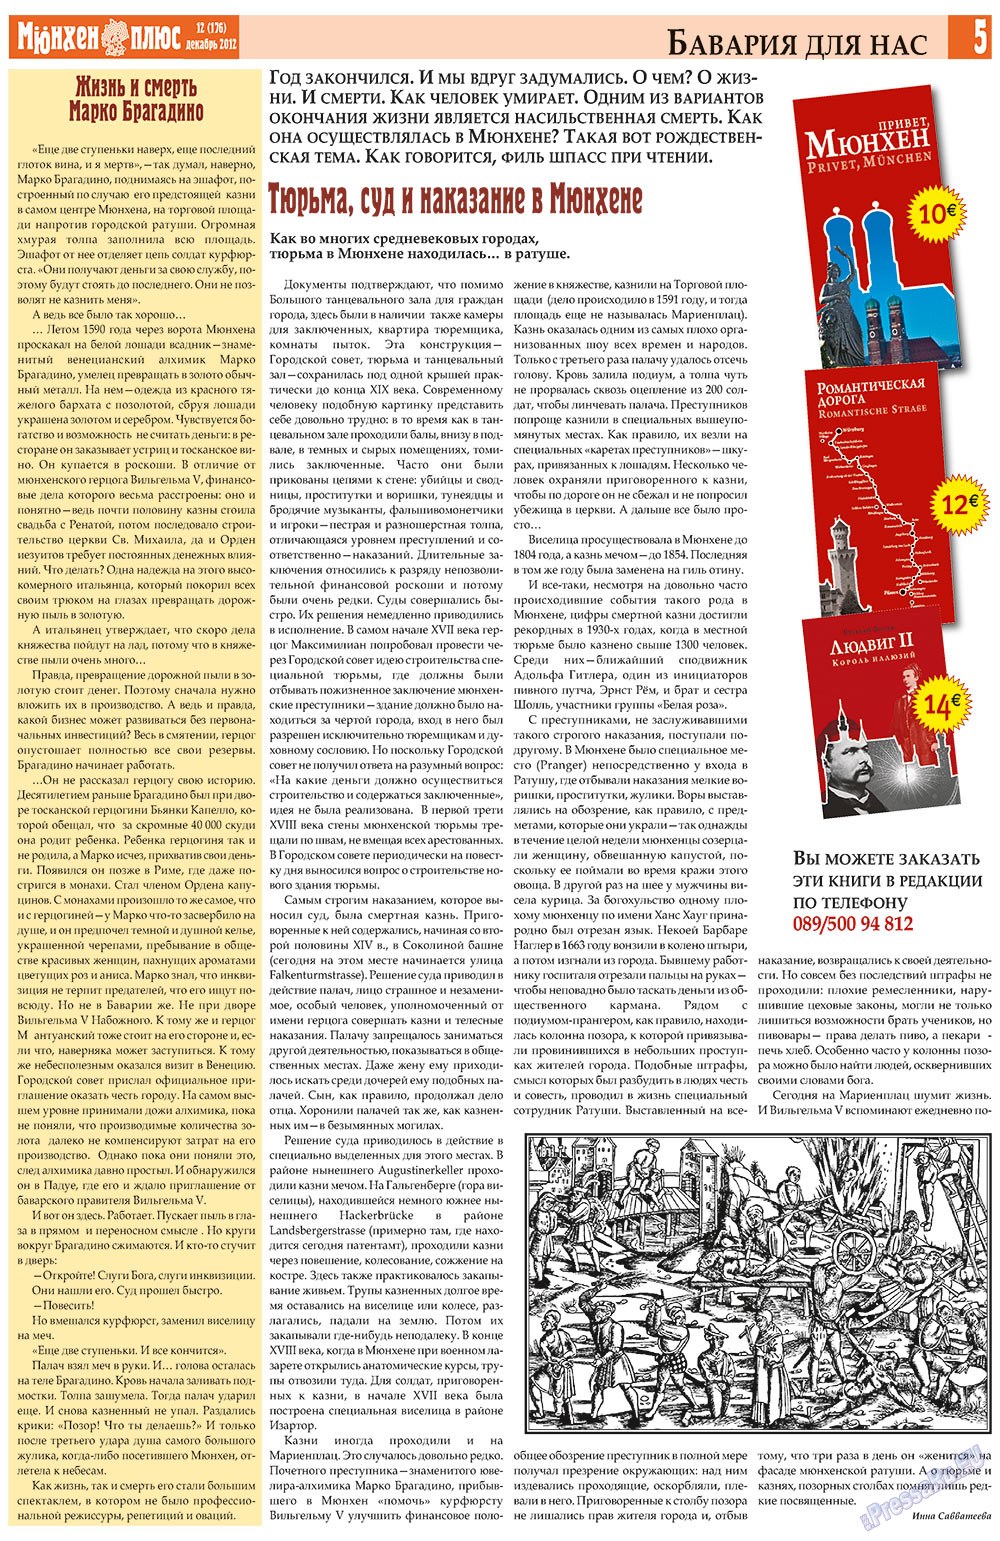 Германия плюс, газета. 2012 №12 стр.5